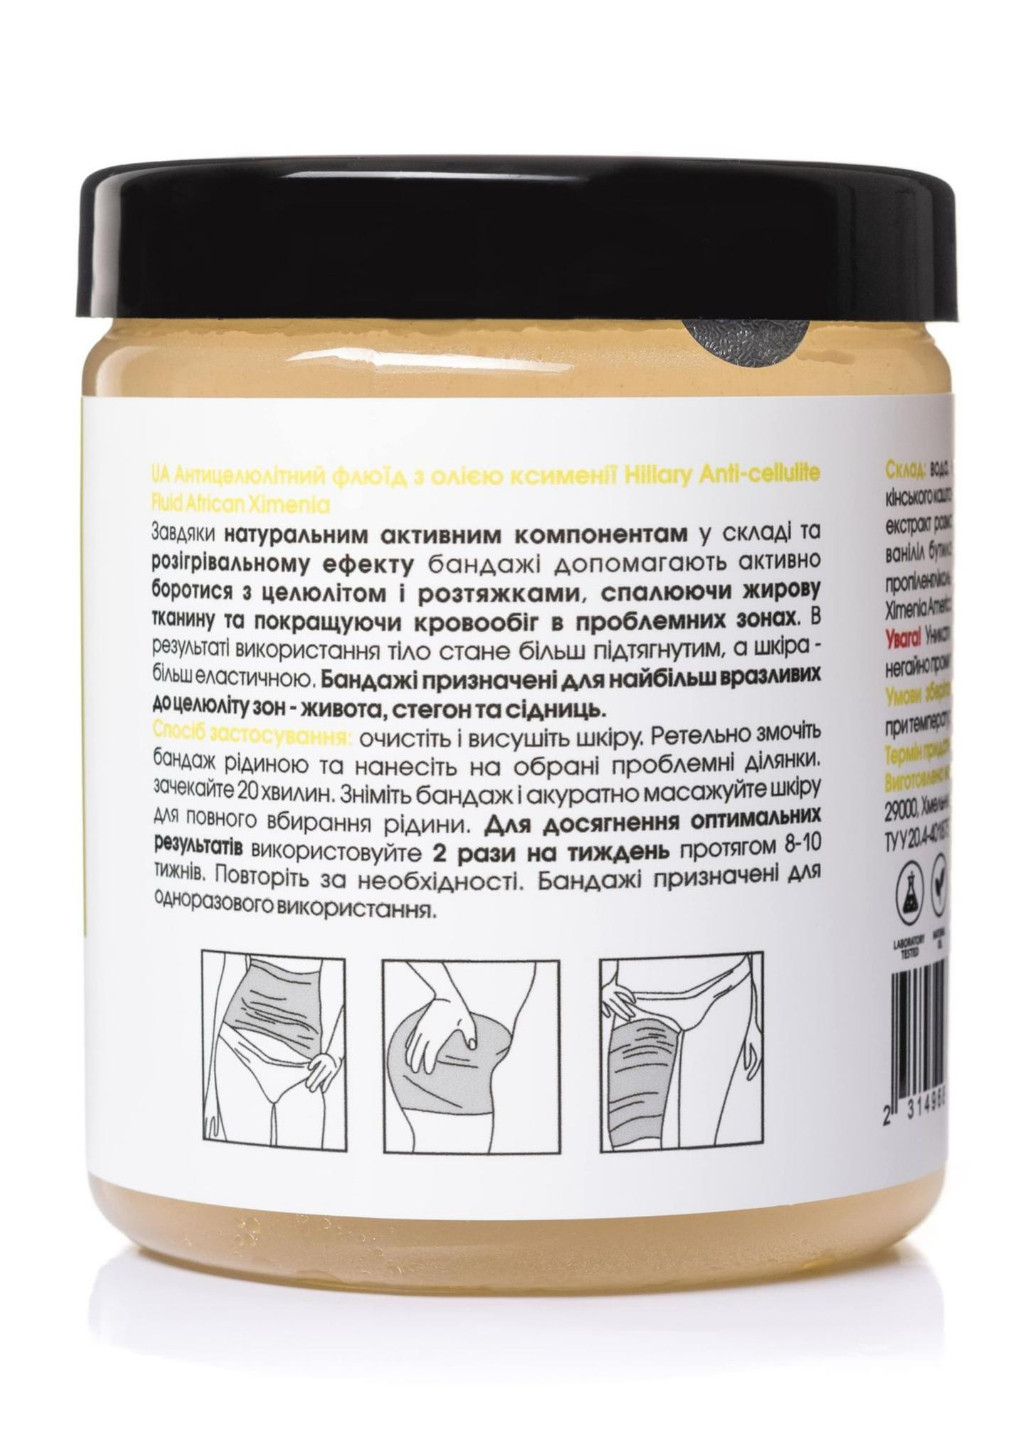 Набір Антицелюлітні обгортання + рідина з олією ксименії Anti-cellulite African Ximenia (6 процедур) Hillary (256770769)